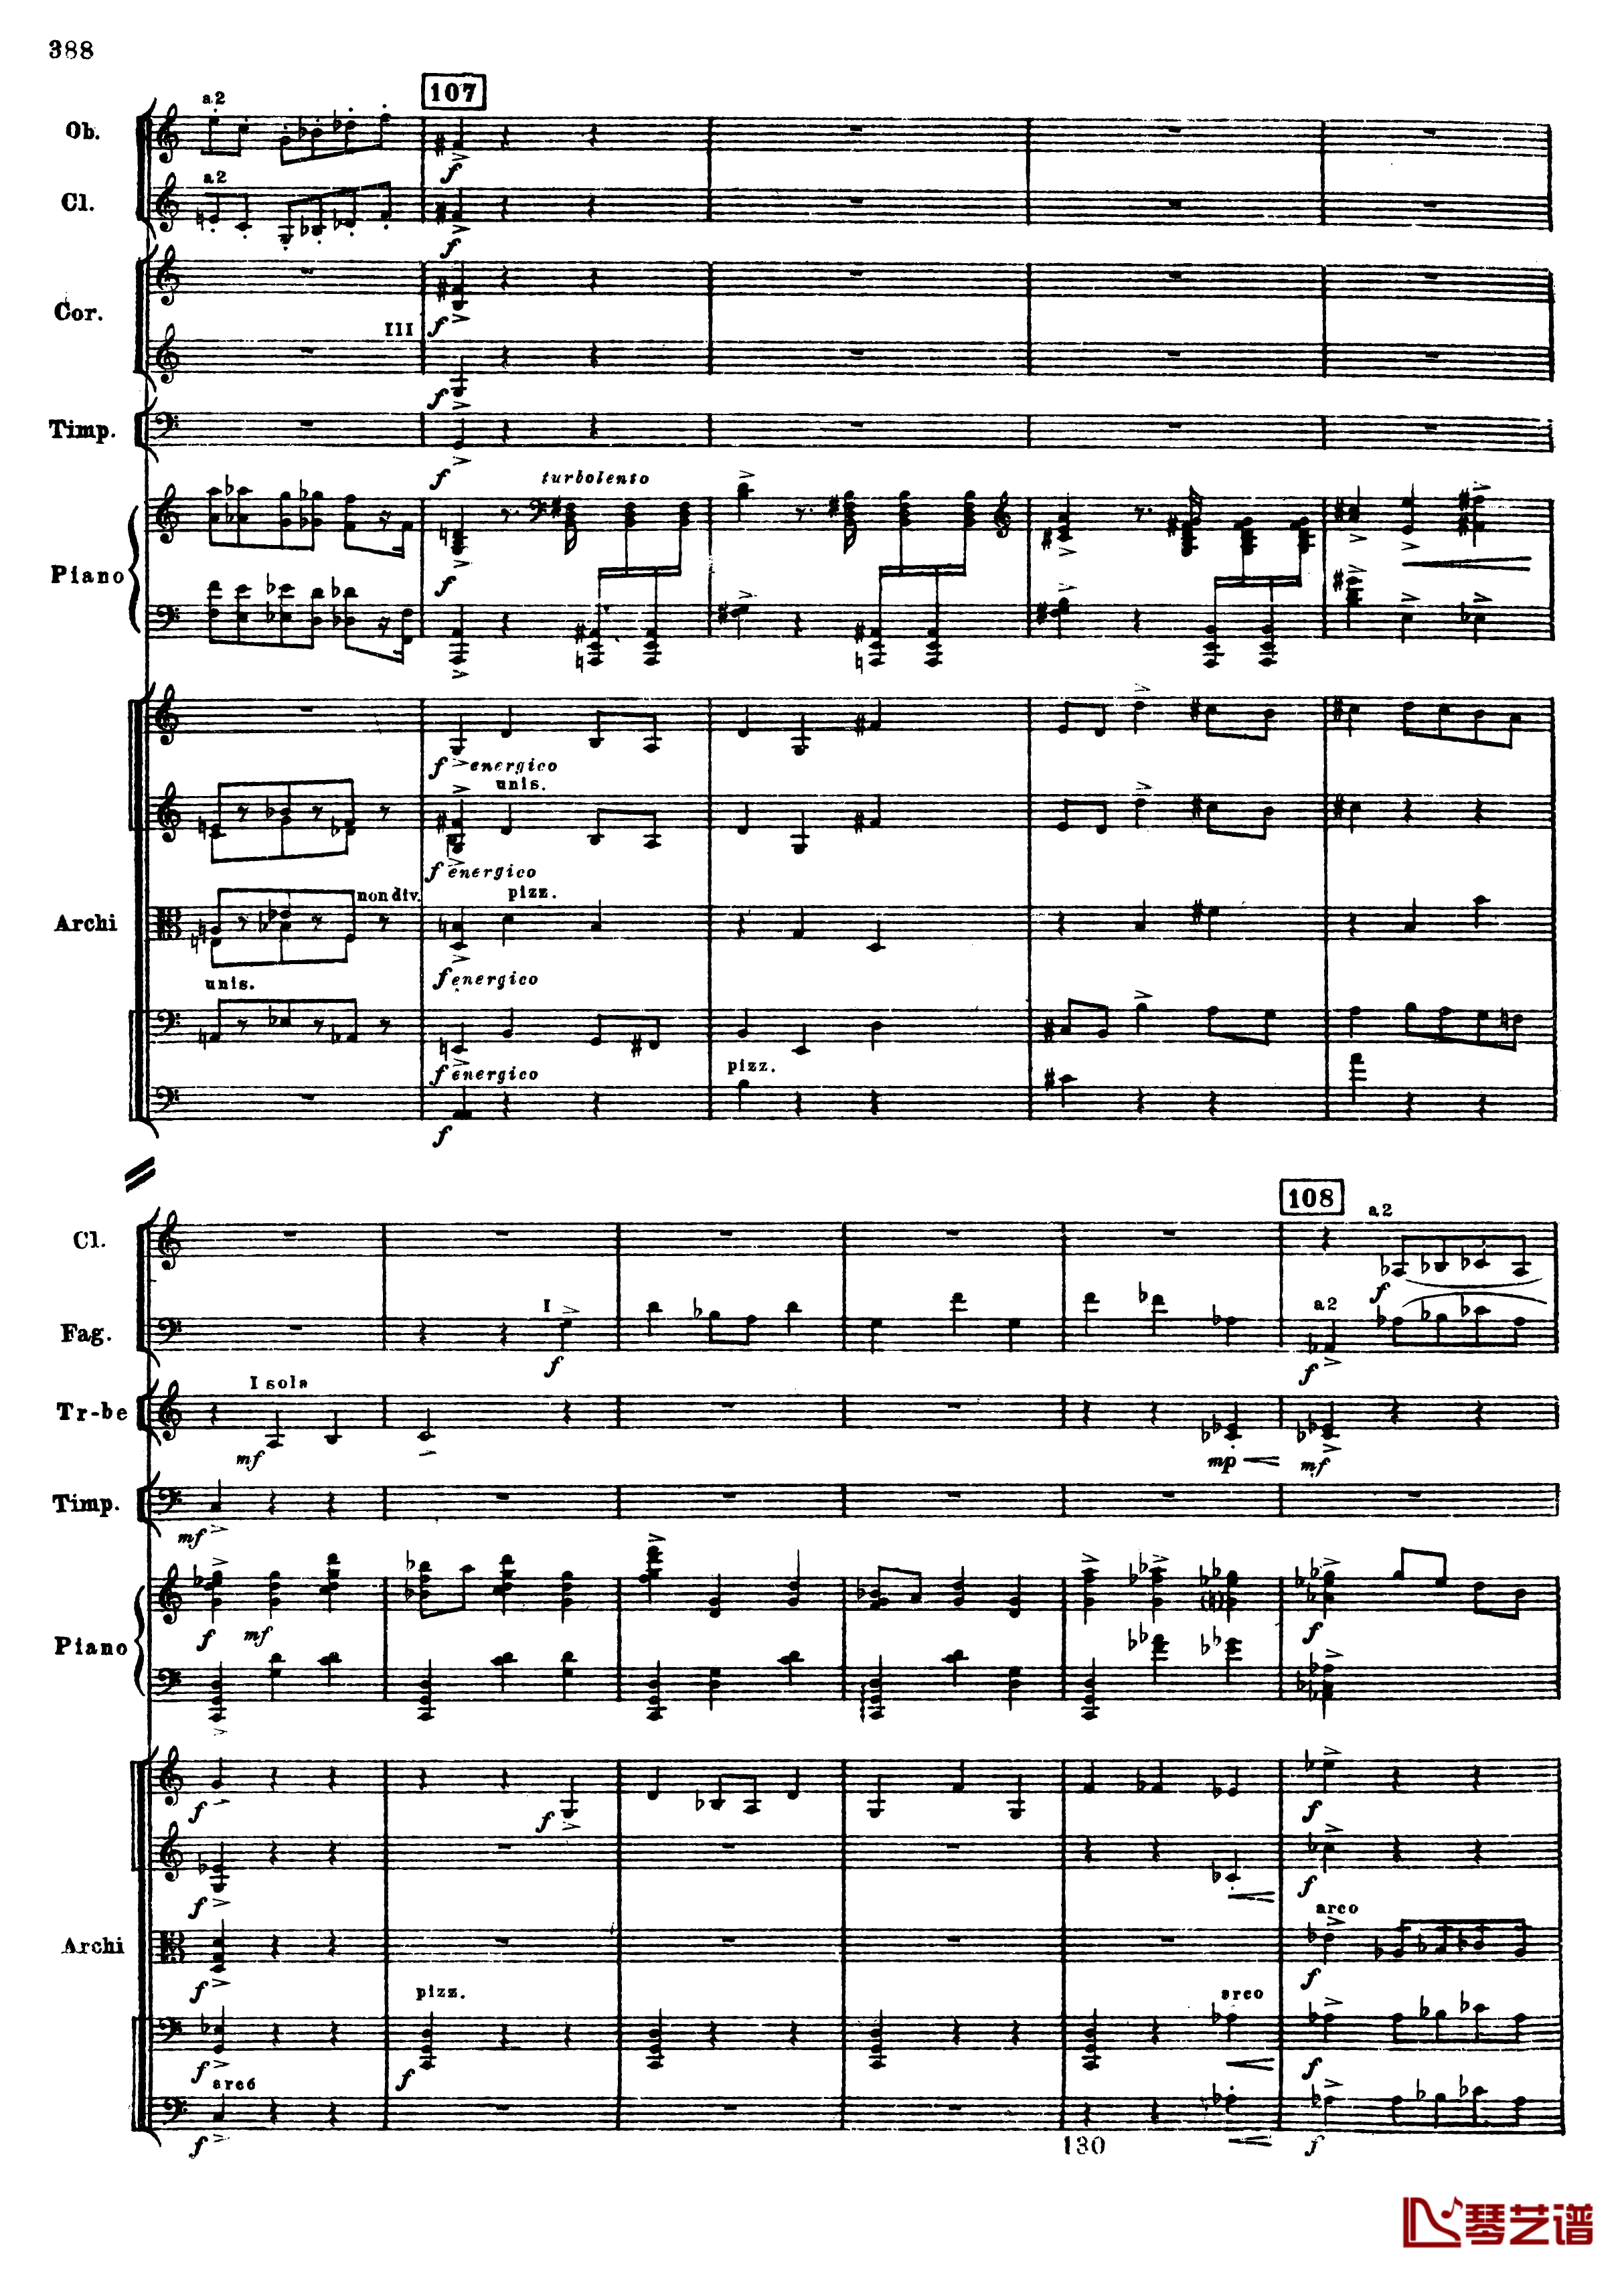 普罗科菲耶夫第三钢琴协奏曲钢琴谱-总谱-普罗科非耶夫120